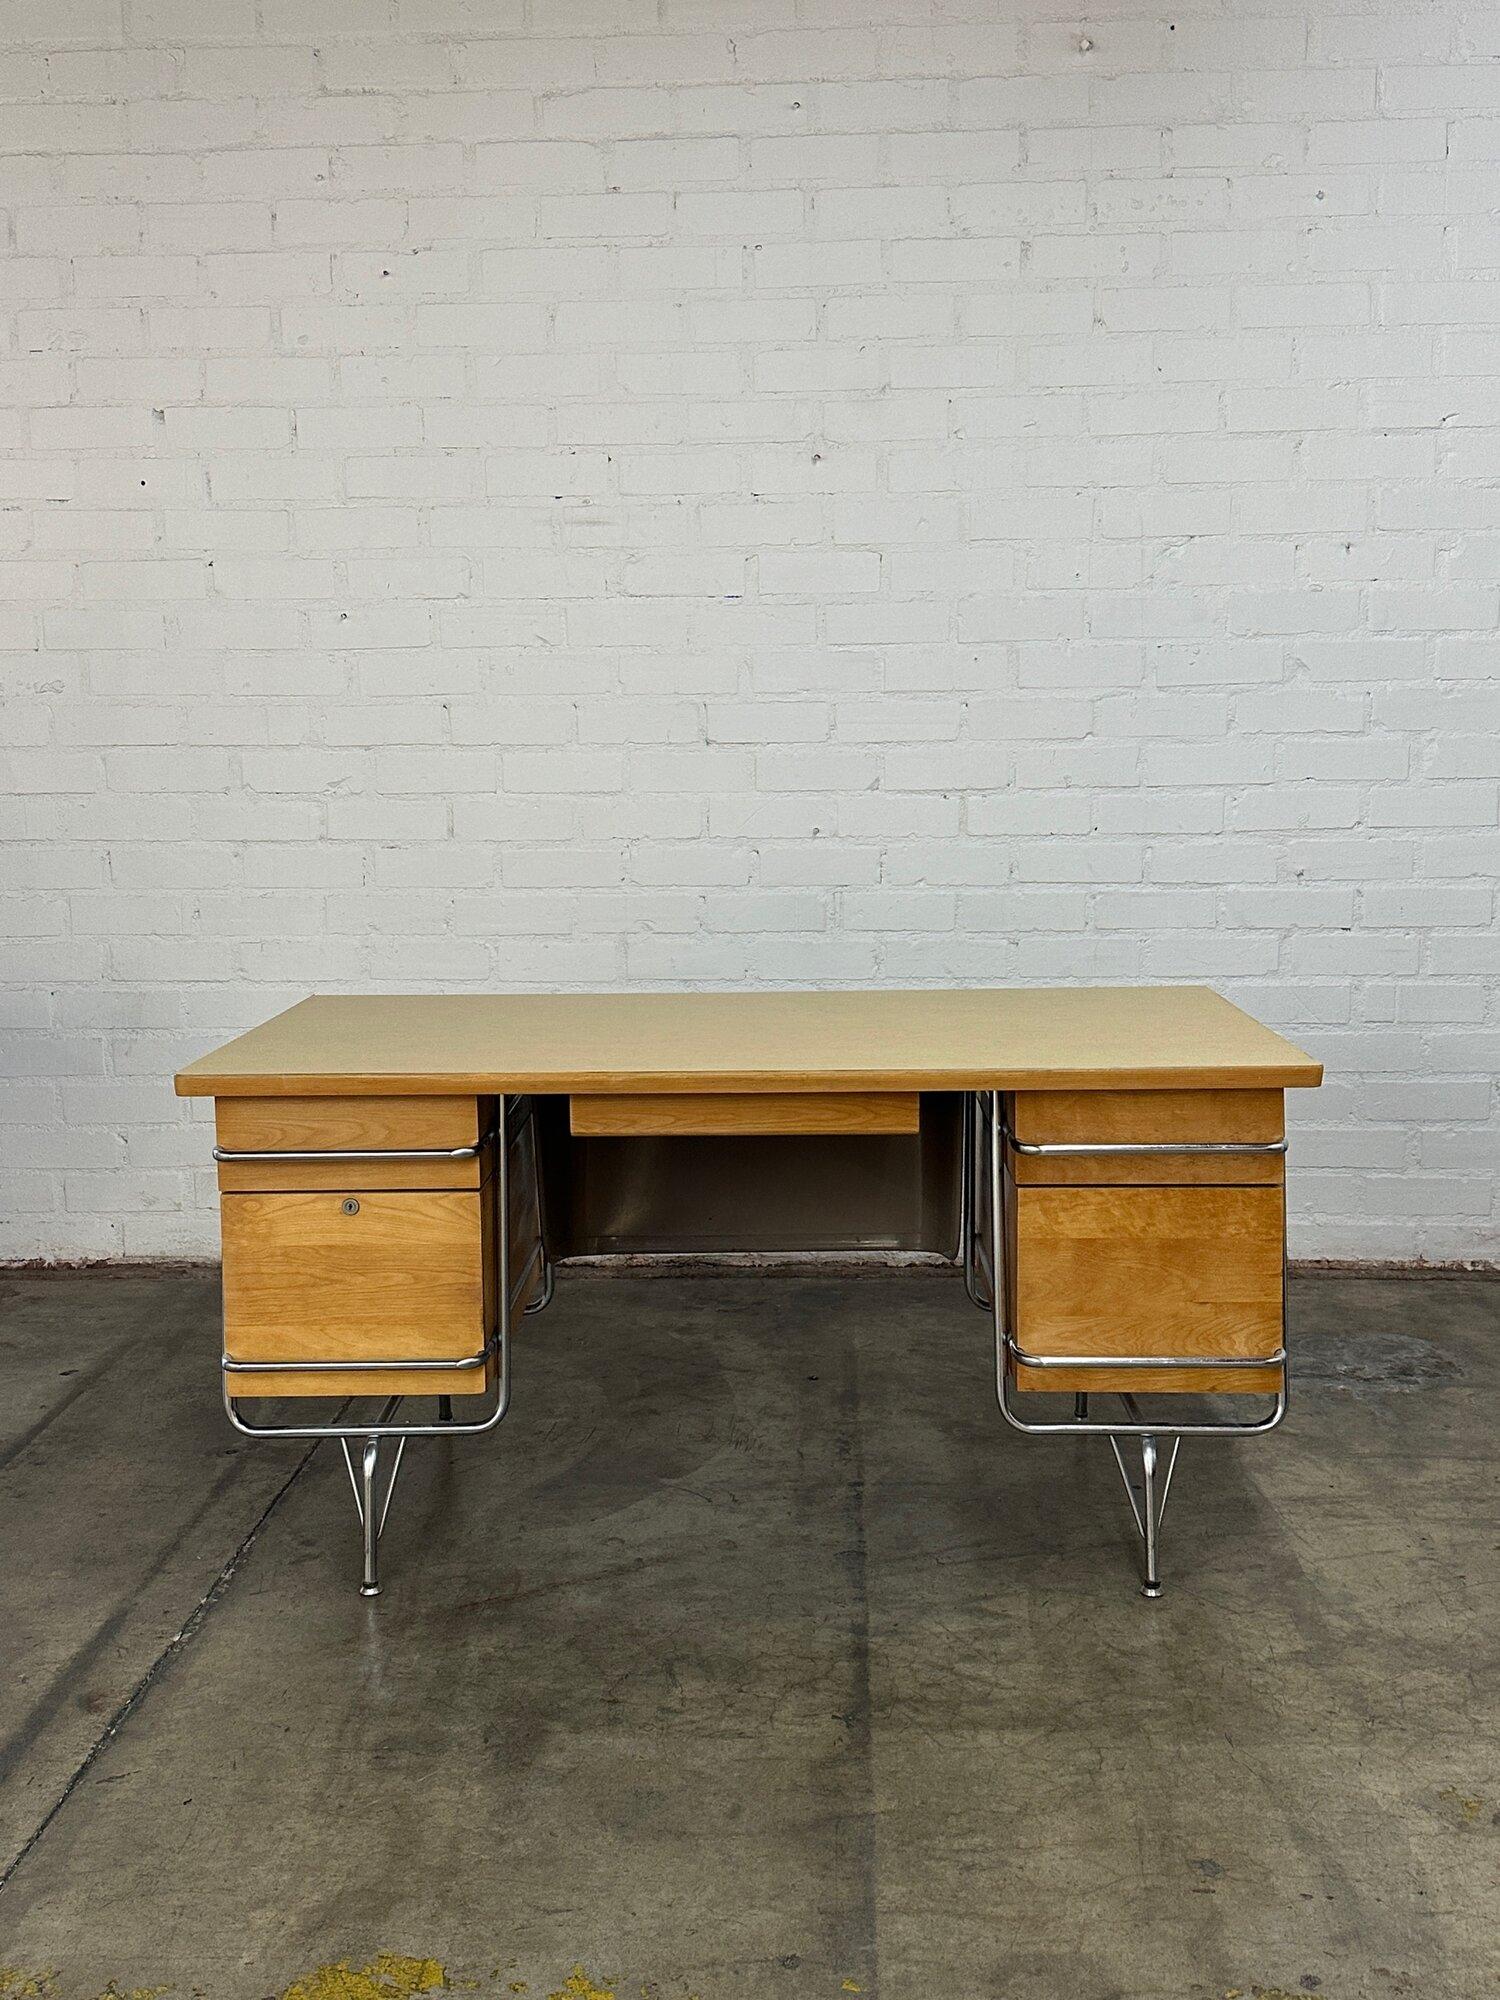 B59,5 T29,5 H29,5

Vollständig überarbeiteter Mid Century Modern-Schreibtisch, entworfen von Kem Weber für Heywood Wakefield. Der Schreibtisch hat ein verchromtes Rohrgestell, Schubladen aus Birkenholz, eine Laminatplatte und eine bescheidene